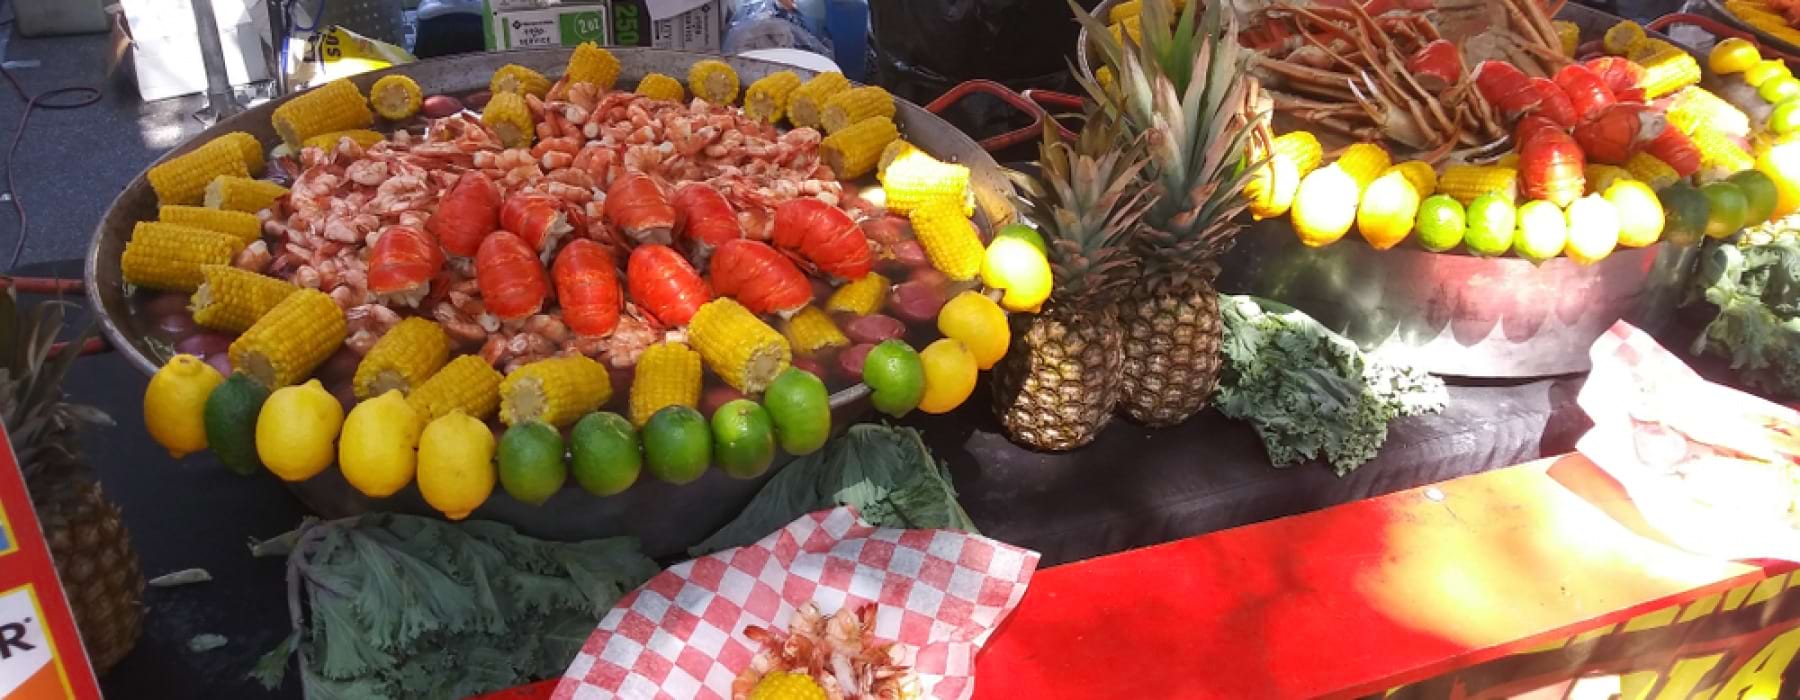 Seafood including lobster served on big platters